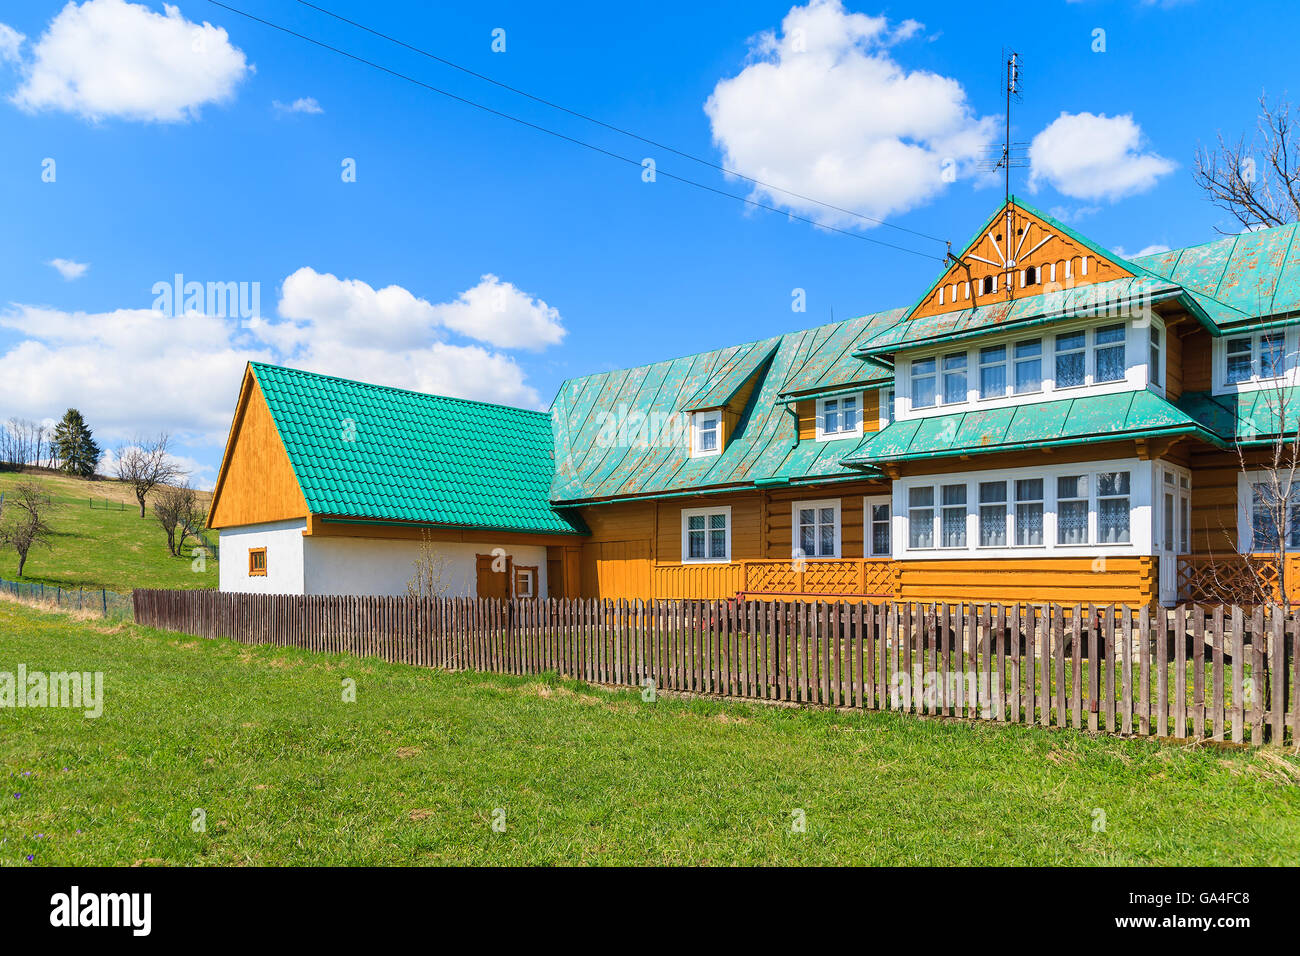 Typisches Holzhaus auf grüner Wiese in Chocholow Dorf, Tatra-Gebirge, Polen Stockfoto